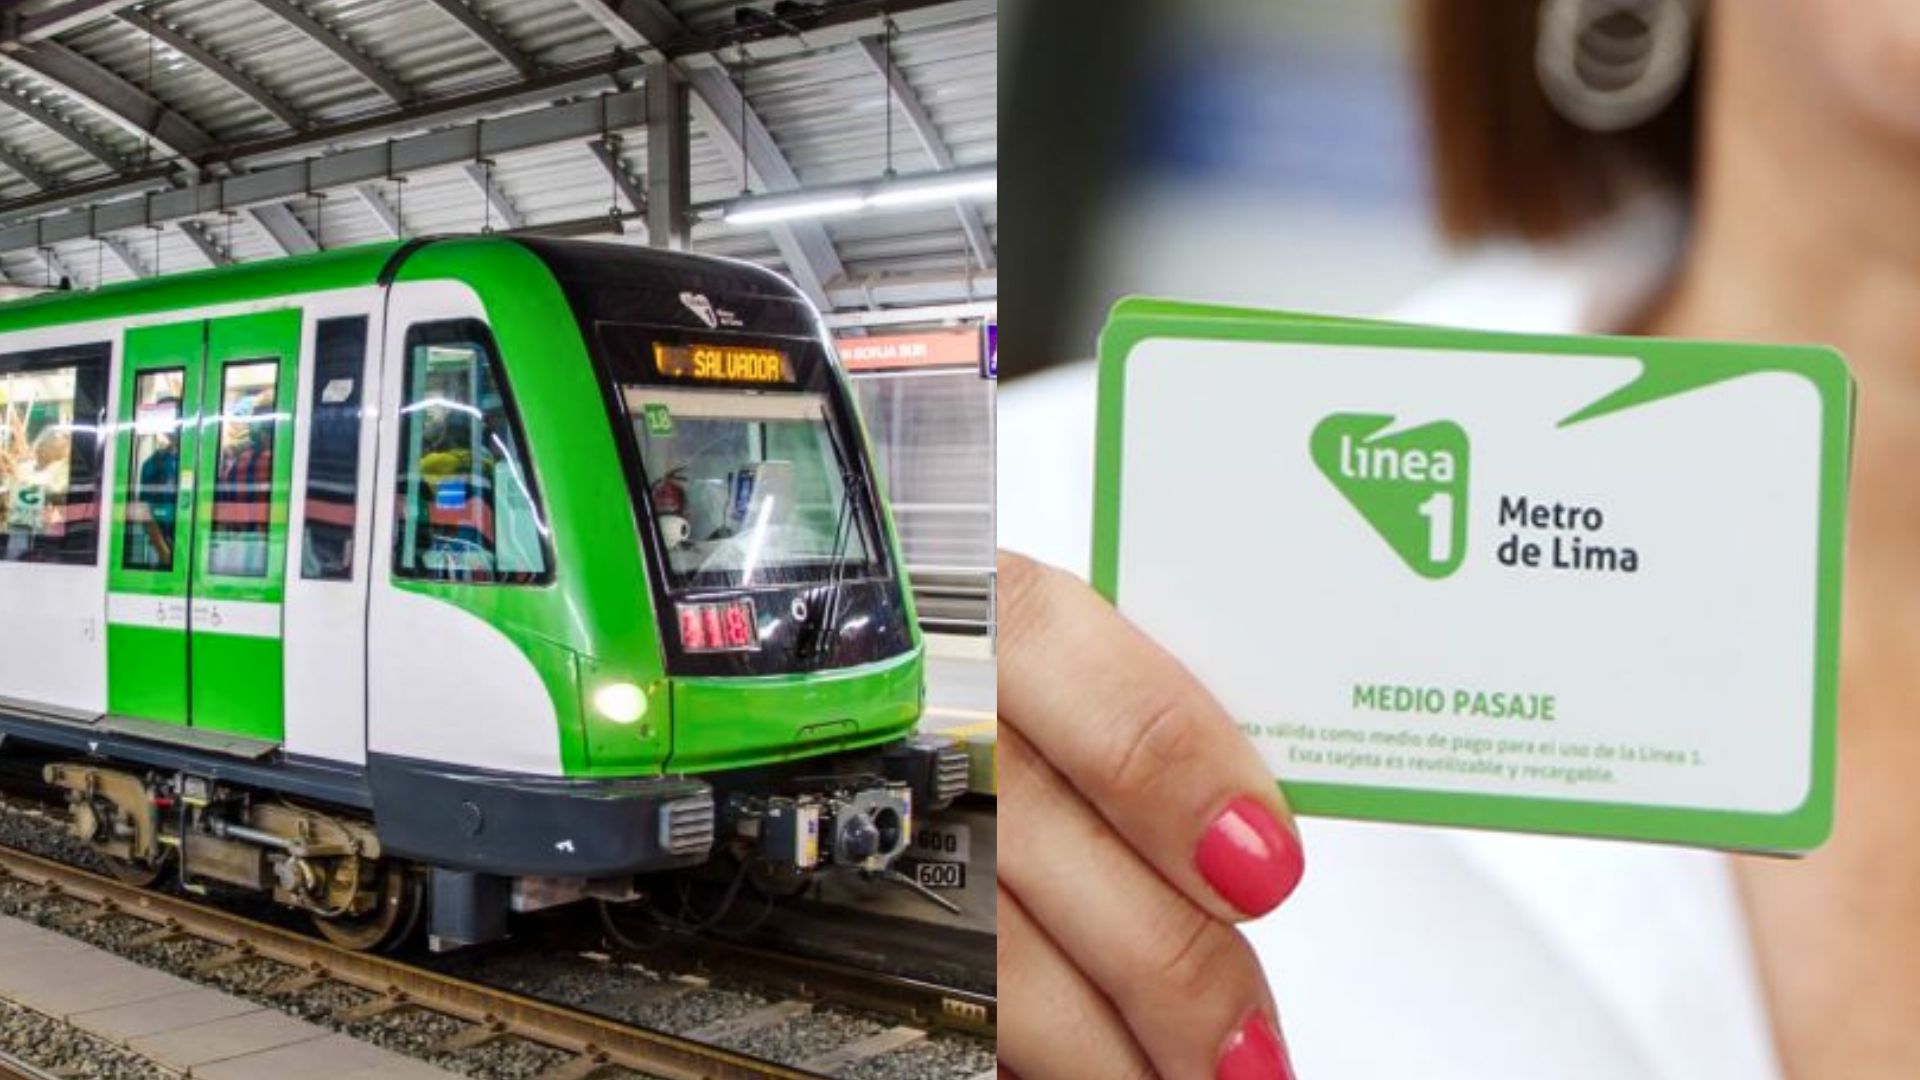 Línea 1 del Metro de Lima: ¿Cómo solicitar la tarjeta de medio pasaje del tren eléctrico?